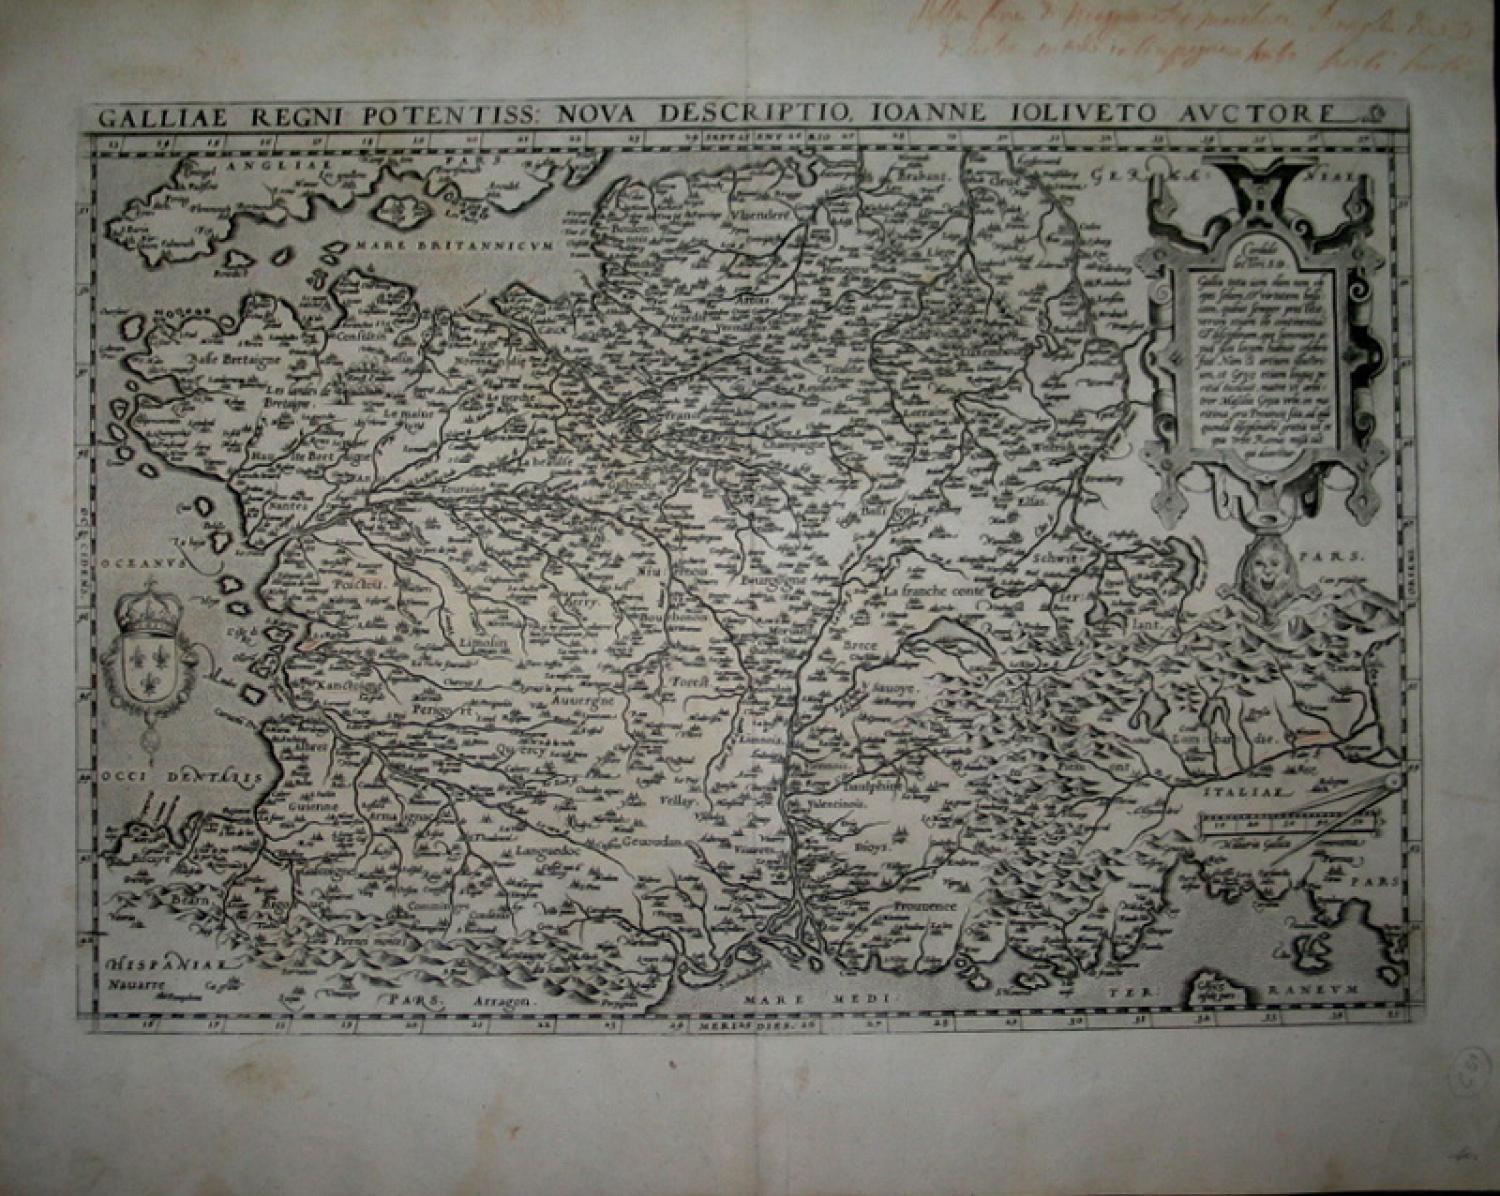 Ortelius - Galliae Regni Potentiss